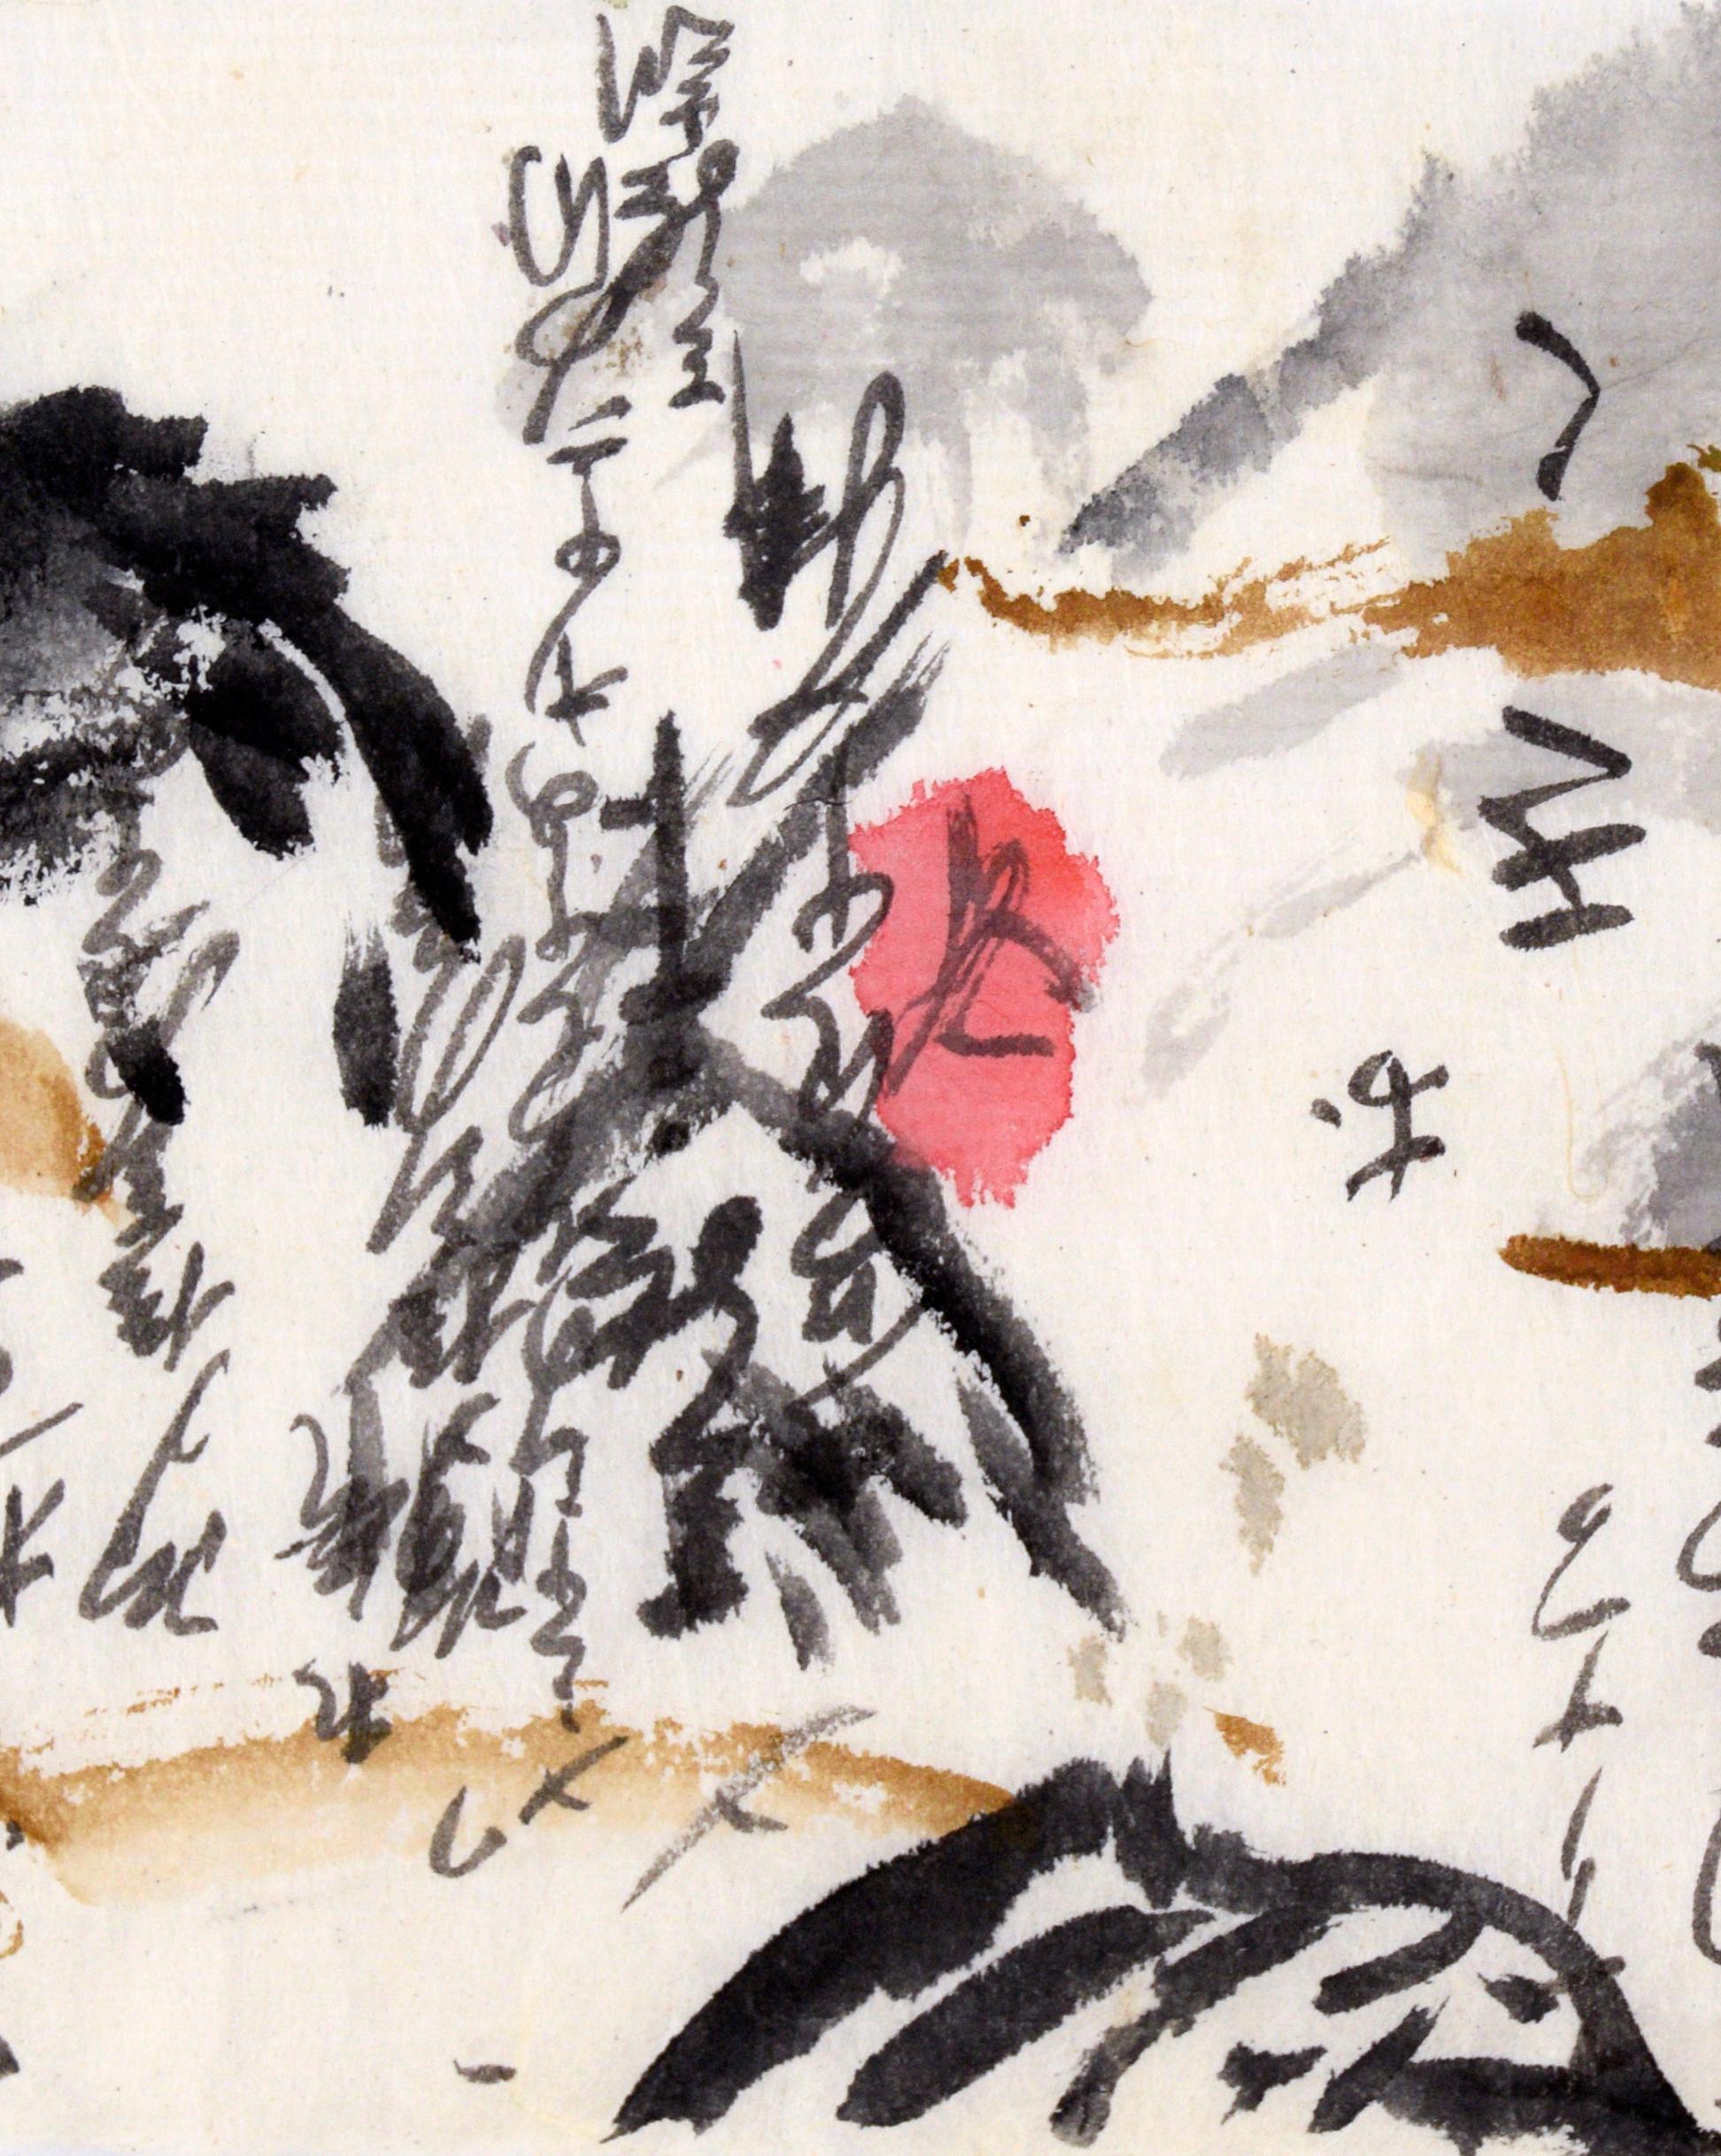 Calligraphie abstraite Panorama I - Calligraphie japonaise sur papier de riz
Paysage et calligraphie sur papier de riz par Michael Pauker (Américain, C.C.).
Signé par l'artiste en bas à droite au crayon rouge, 